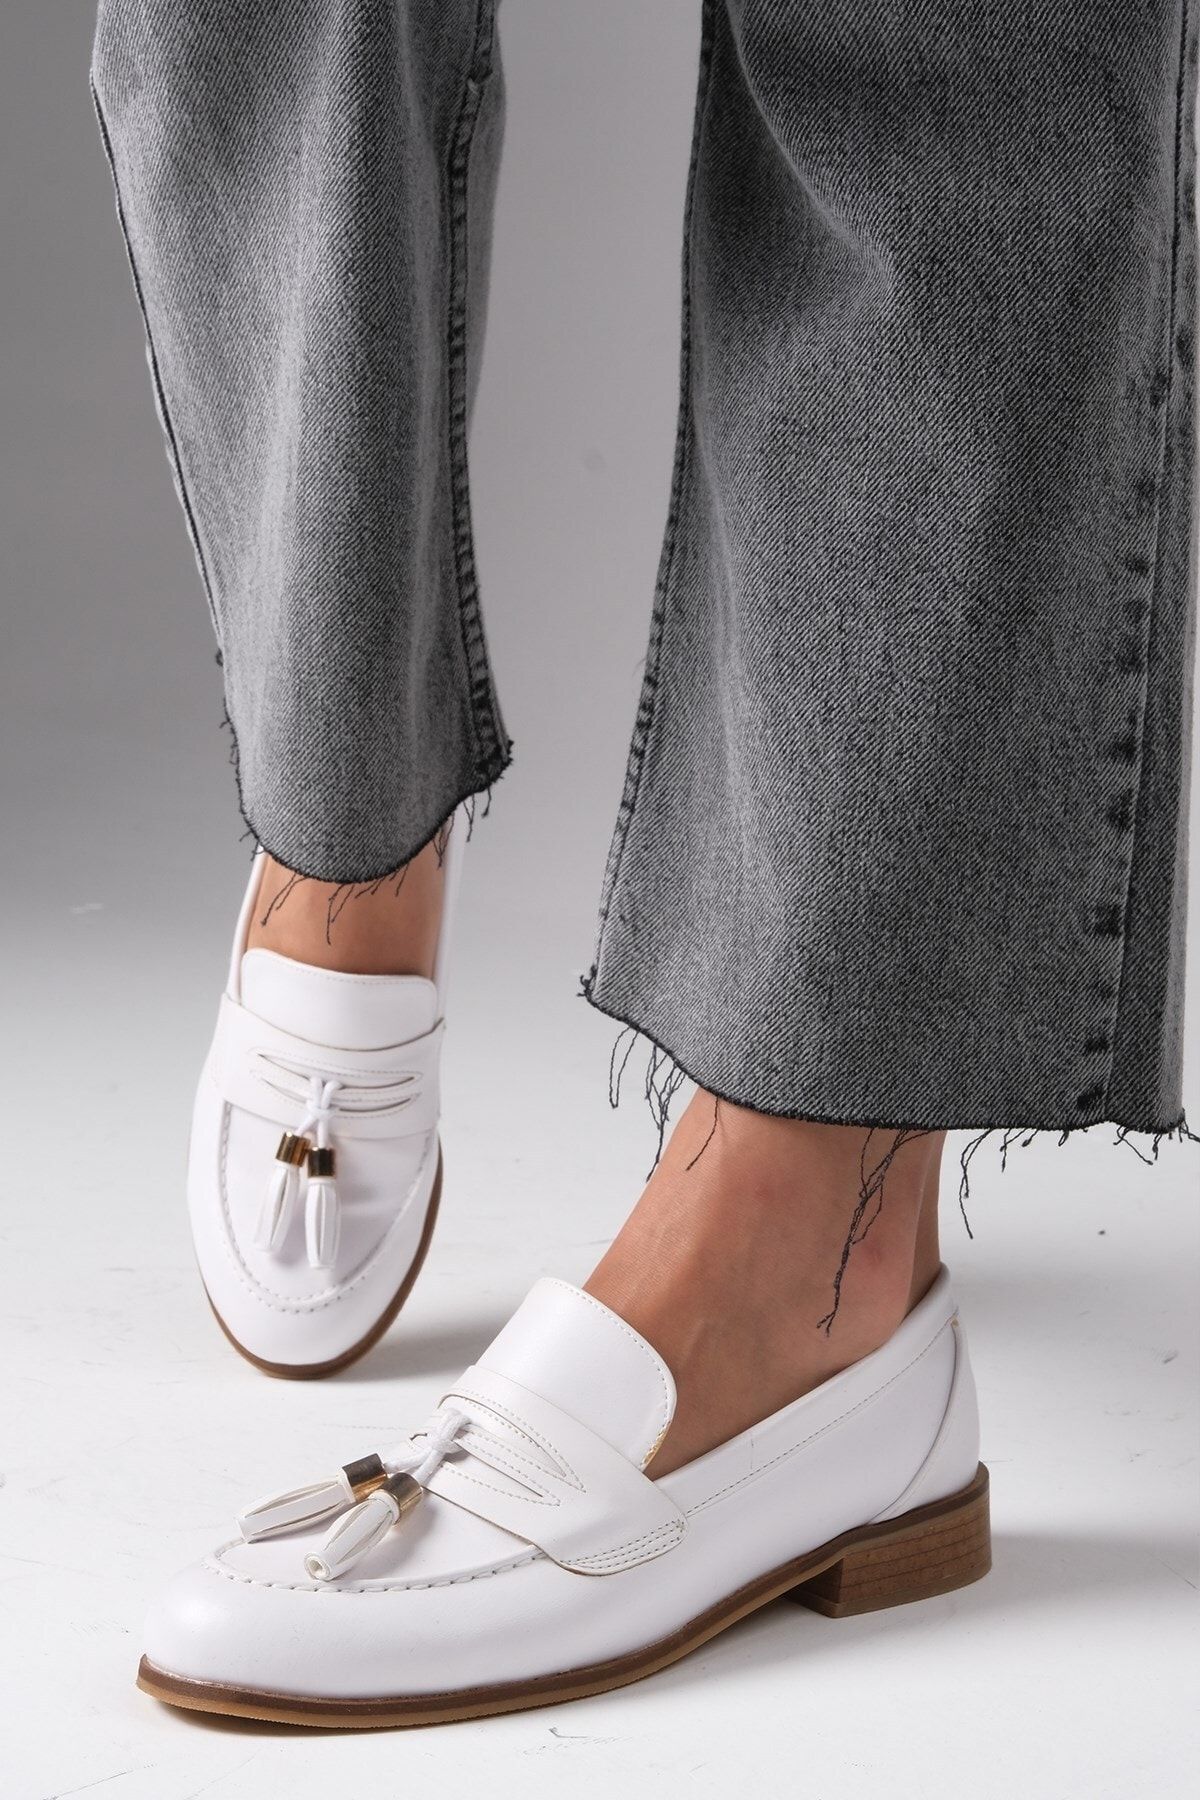 Mio Gusto Dylan Beyaz Renk Kadın Oxford Düz Ayakkabı